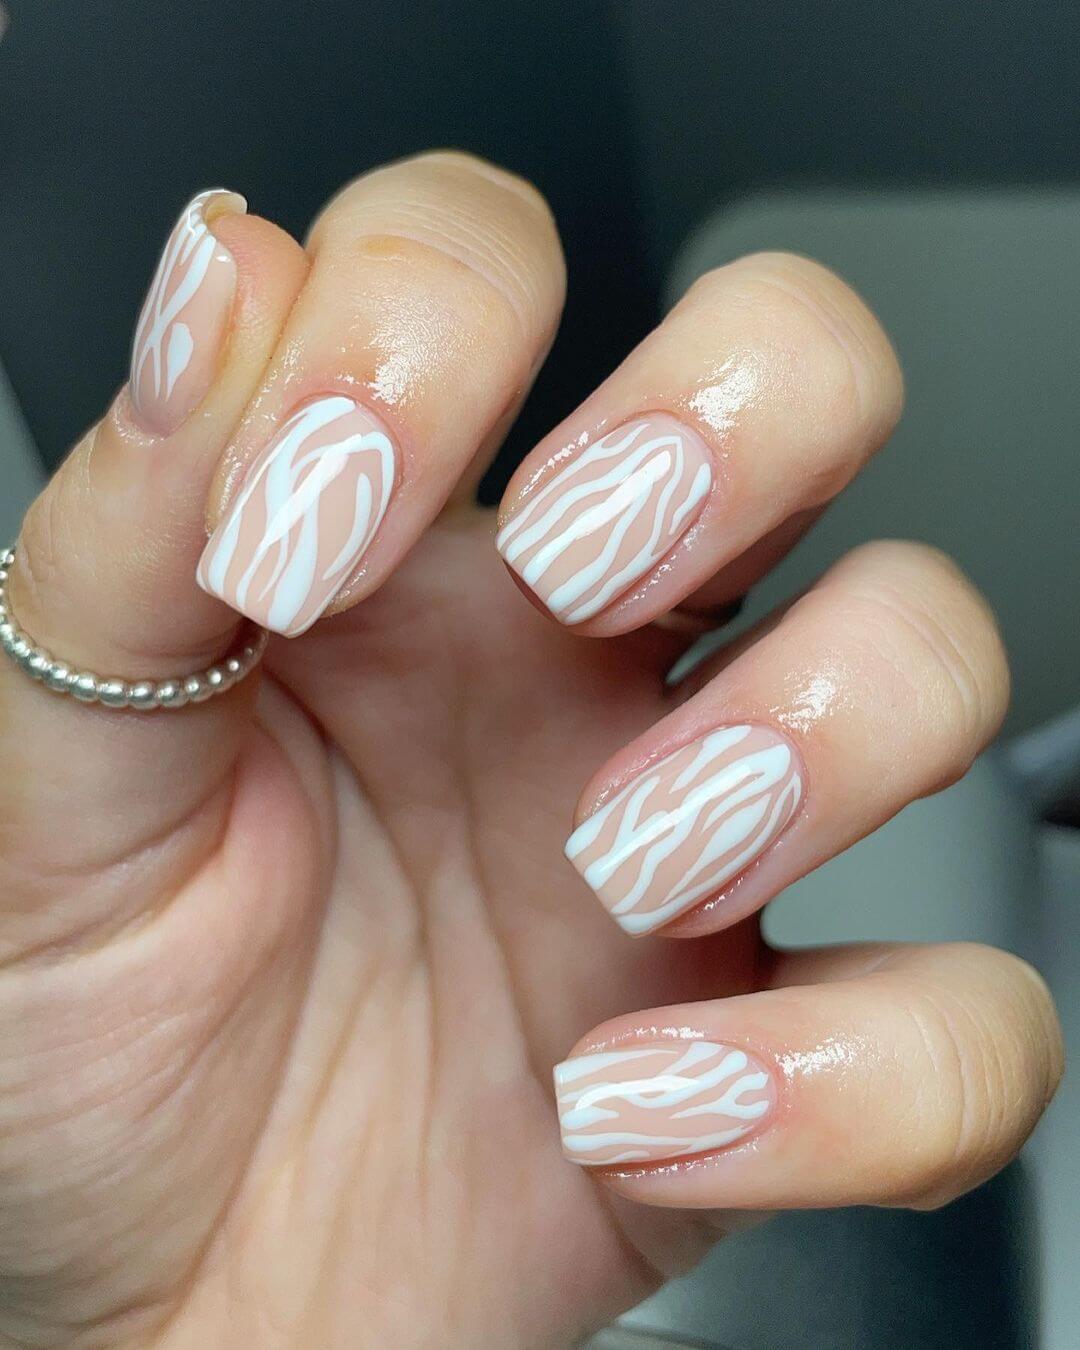 Zebra stripes inspired nail art in white